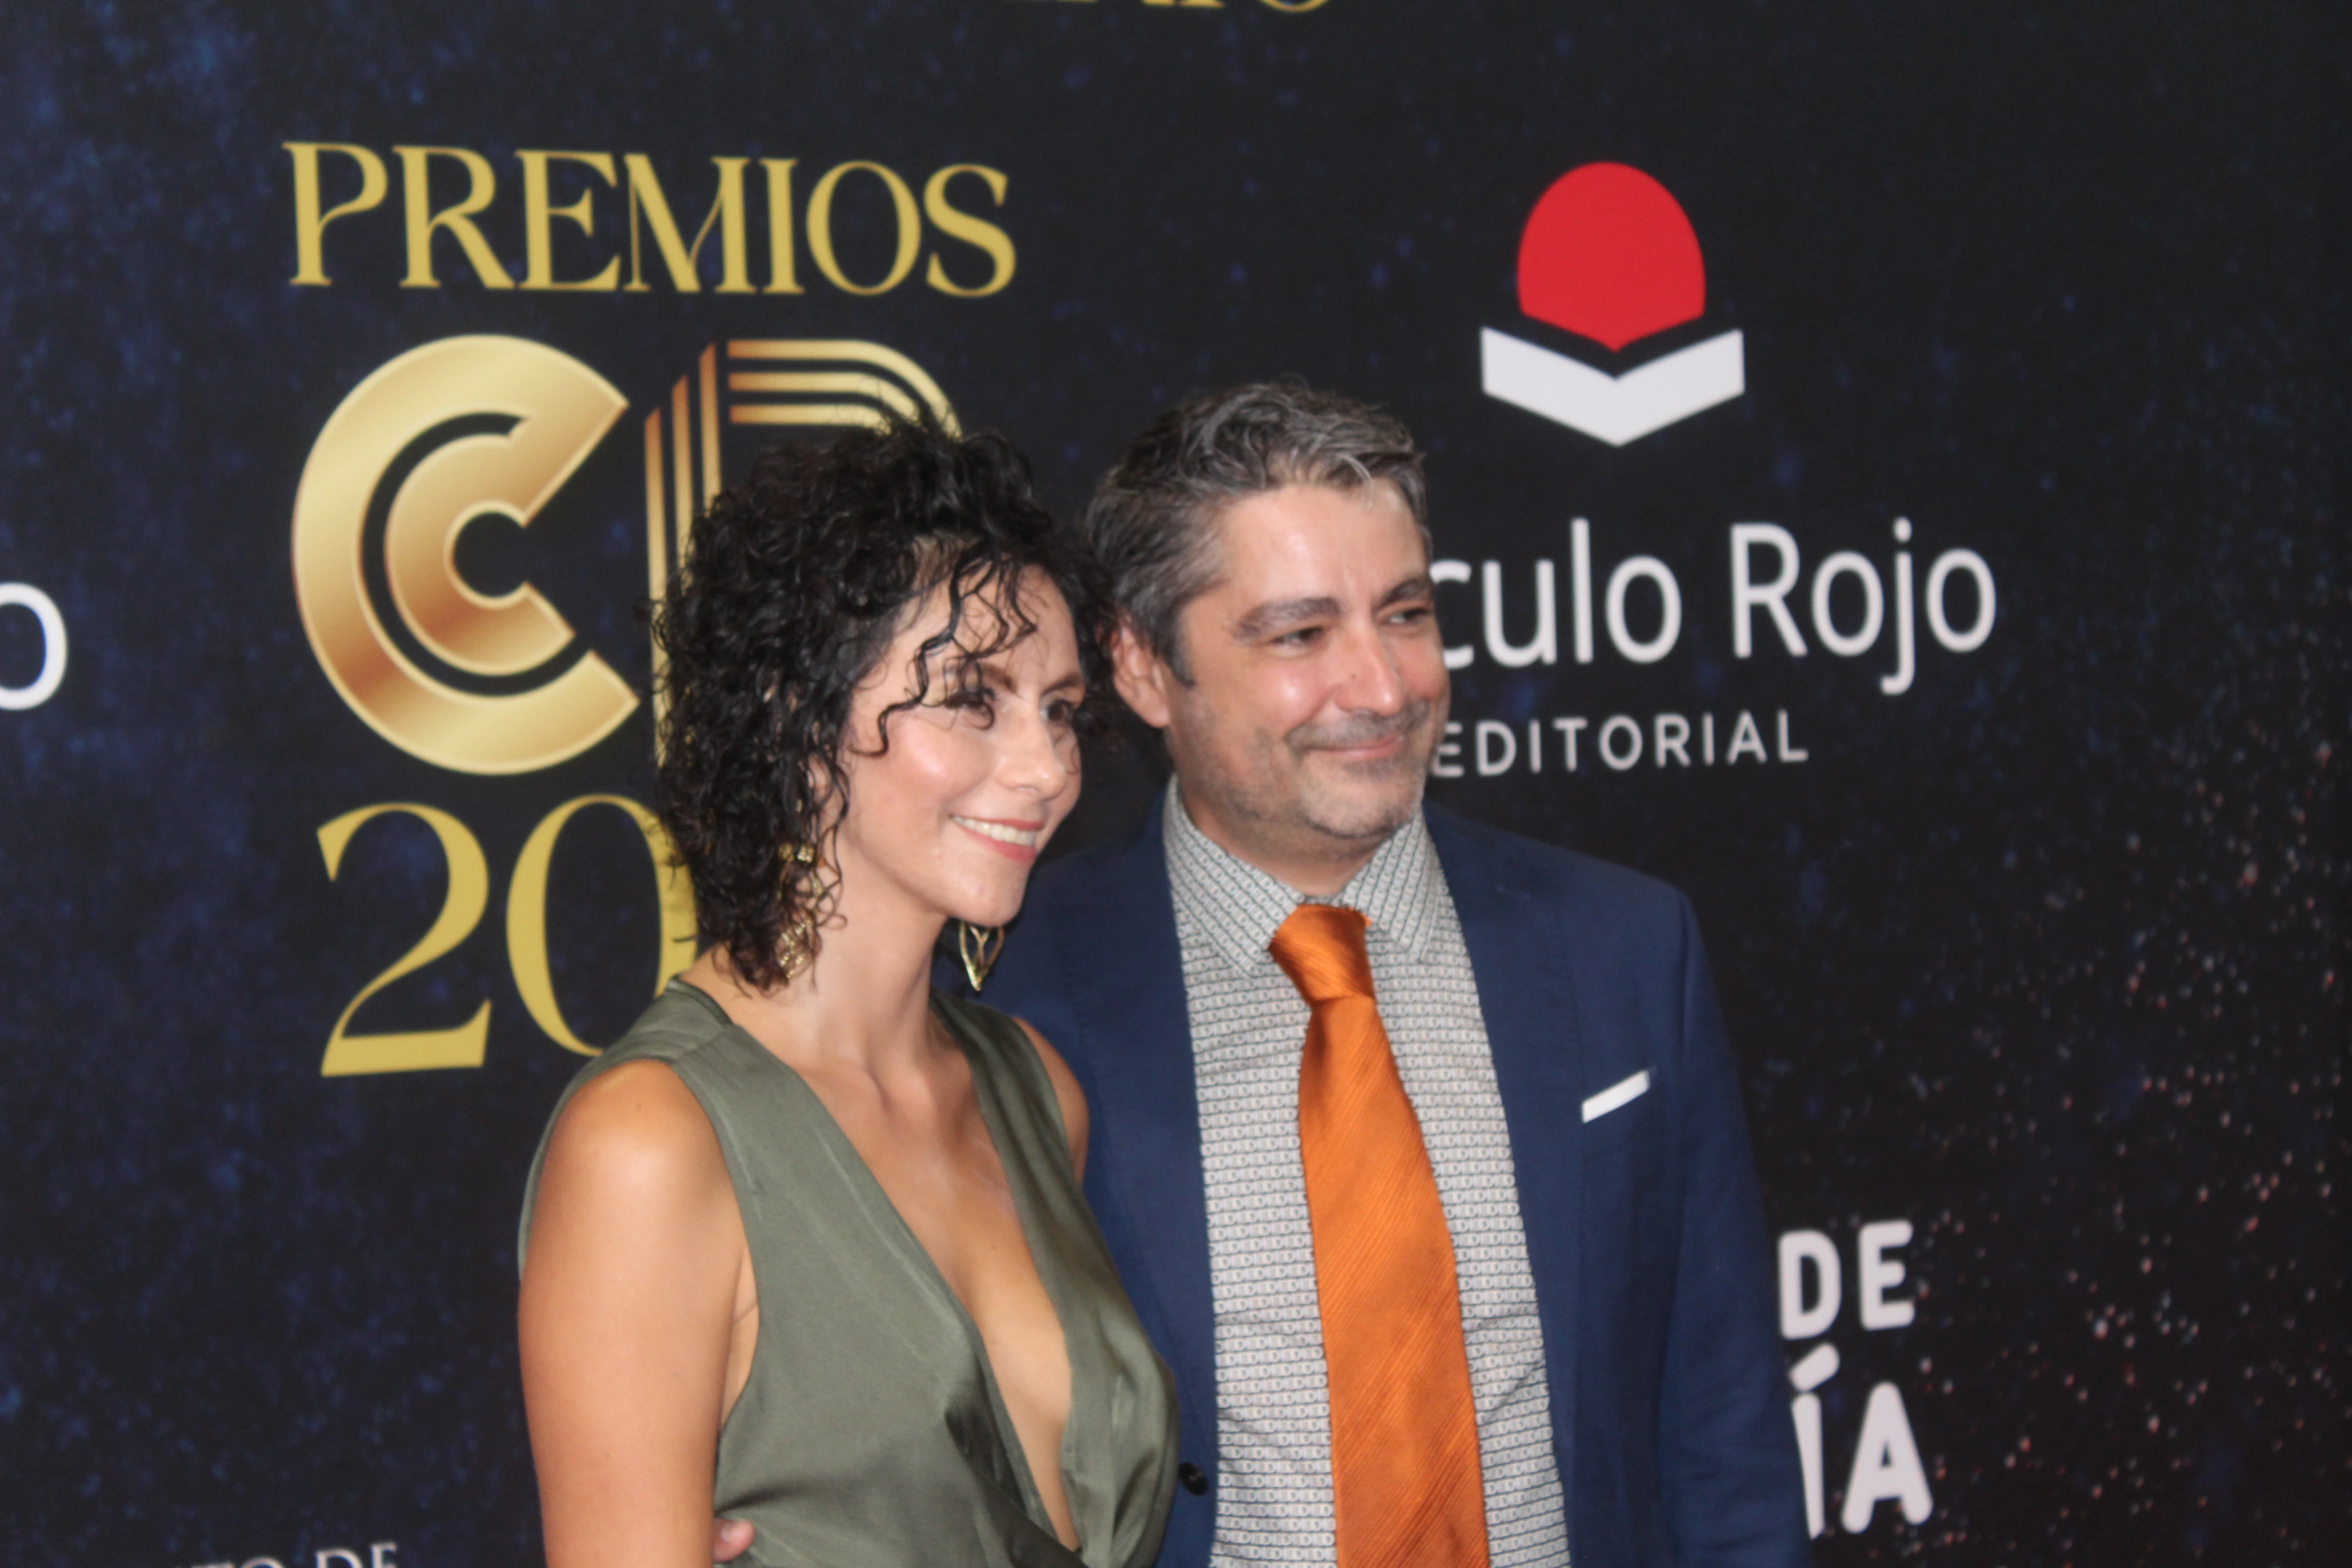 La editorial Círculo Rojo celebra en Almería la gala de sus premios anuales